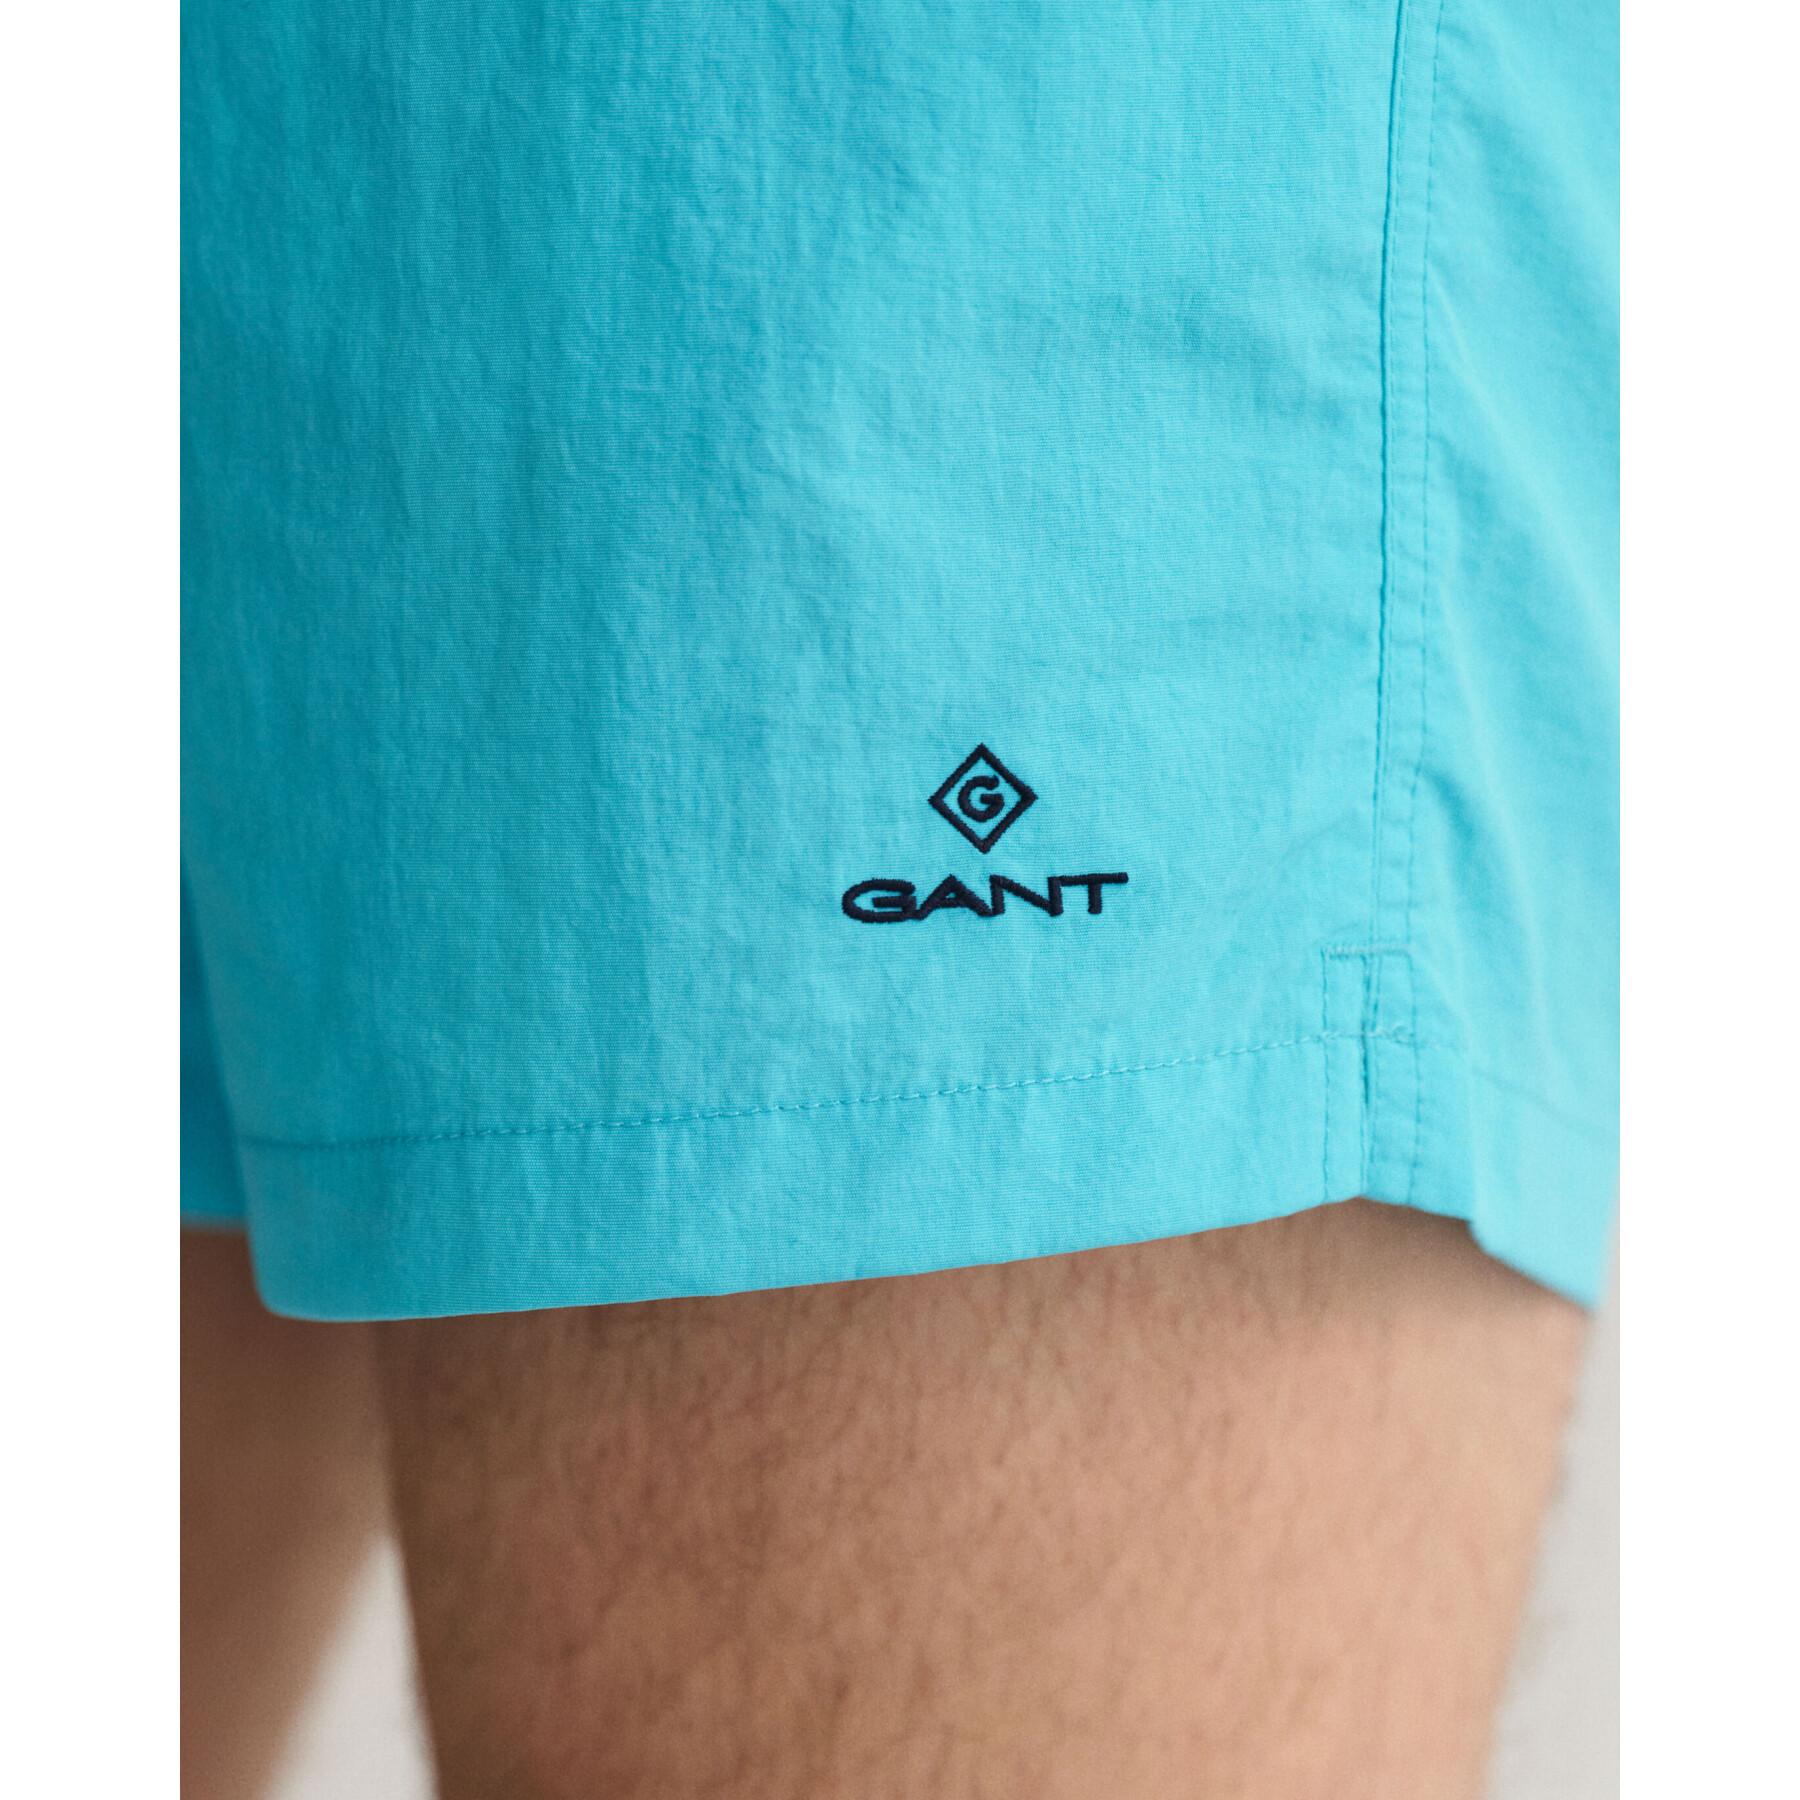 Badshorts Gant Classic Fit